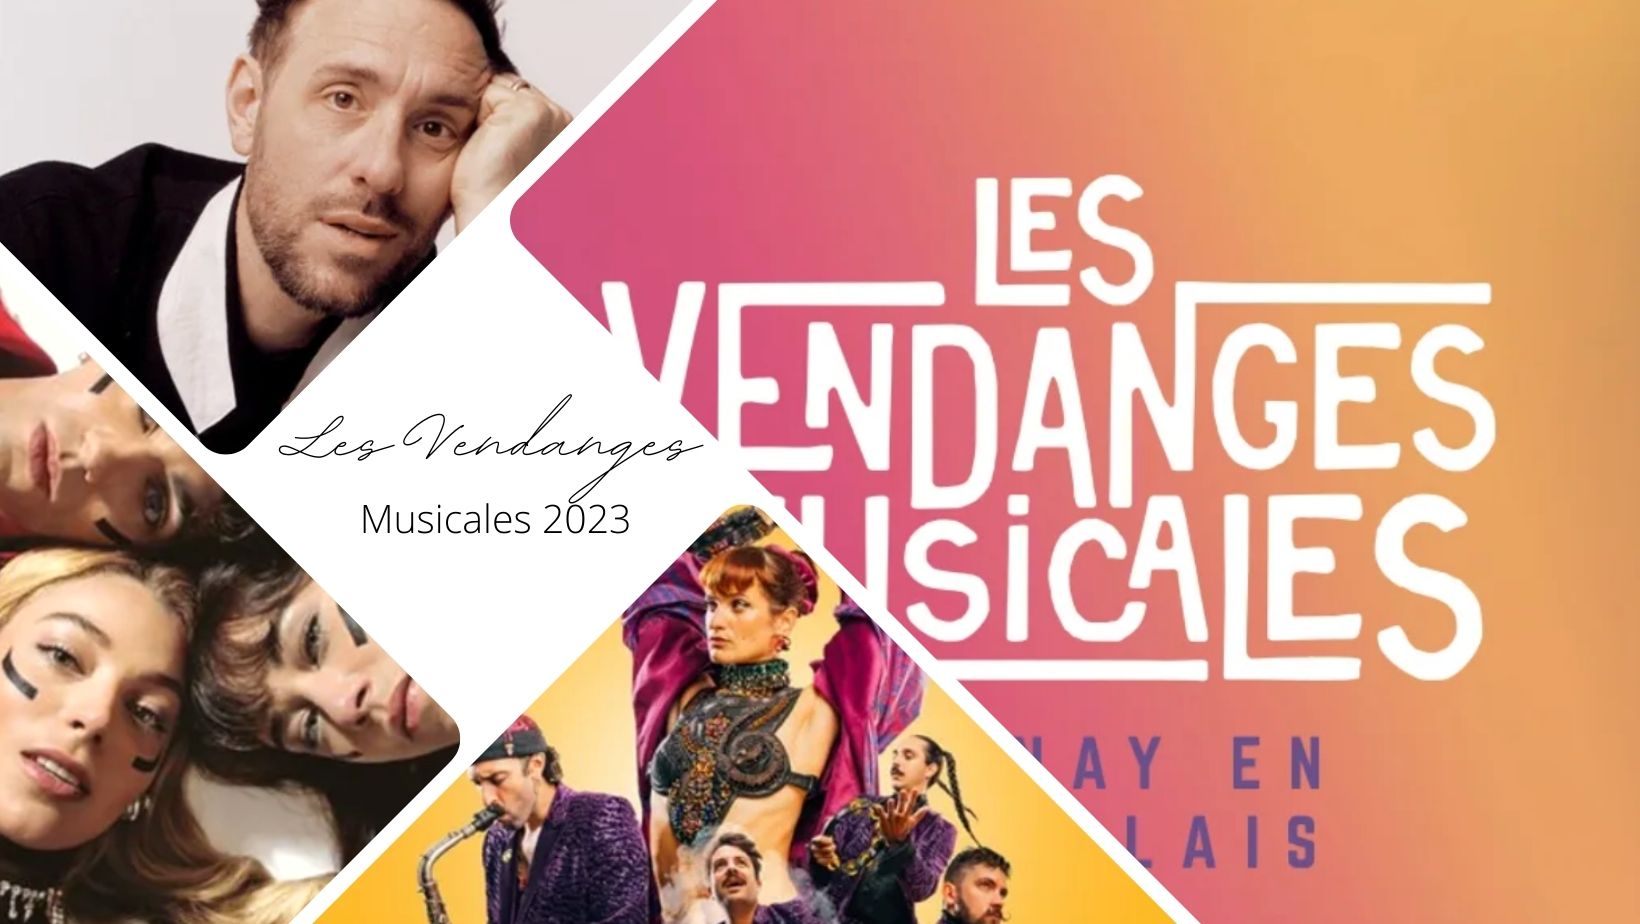 Festival Les Vendanges Musicales 2023 - Charnay en Beaujolais